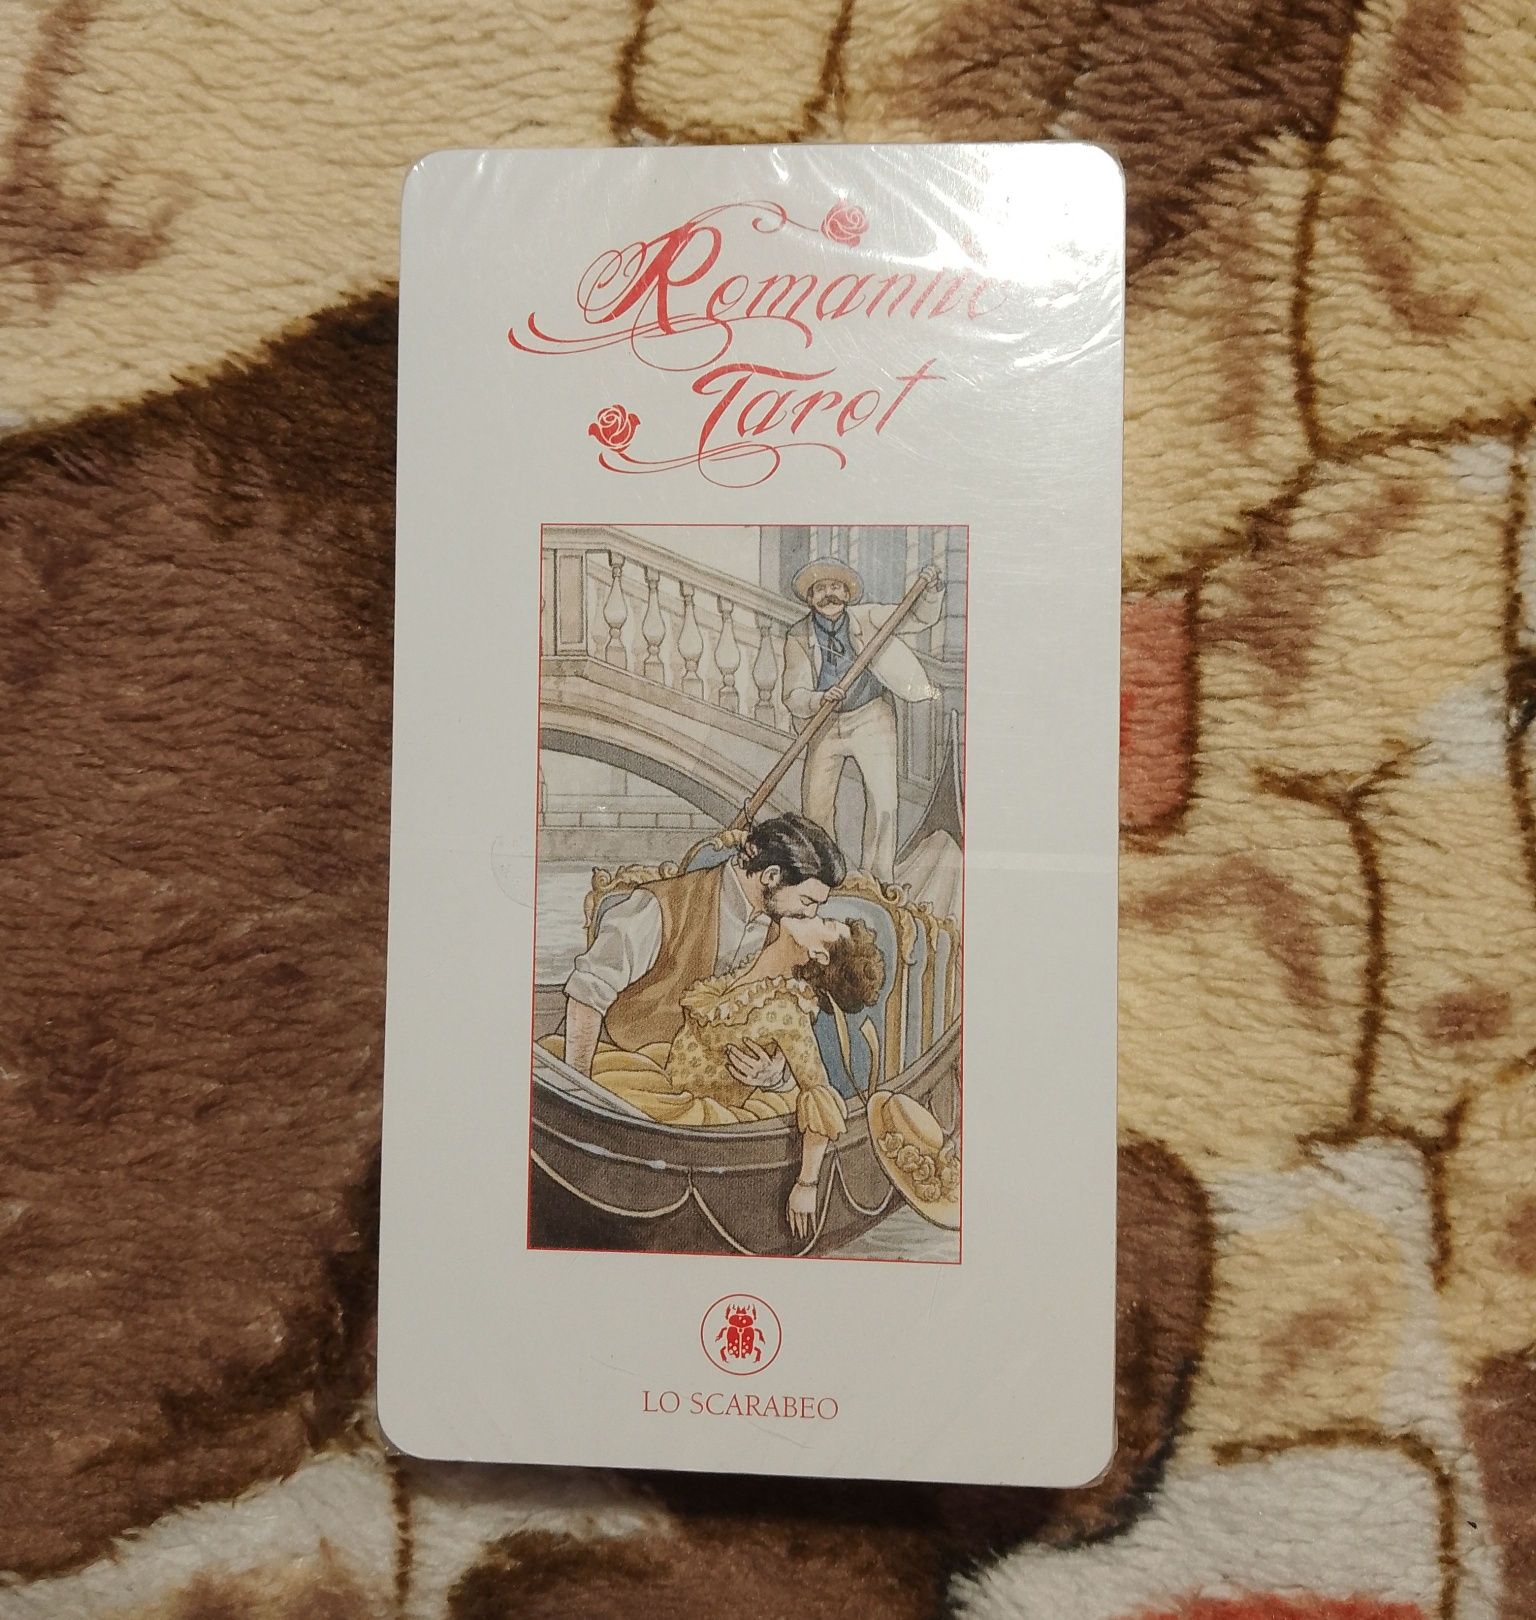 Книга карты таро Арт Нуво золотое, Романтическое, Мистическое оригинал